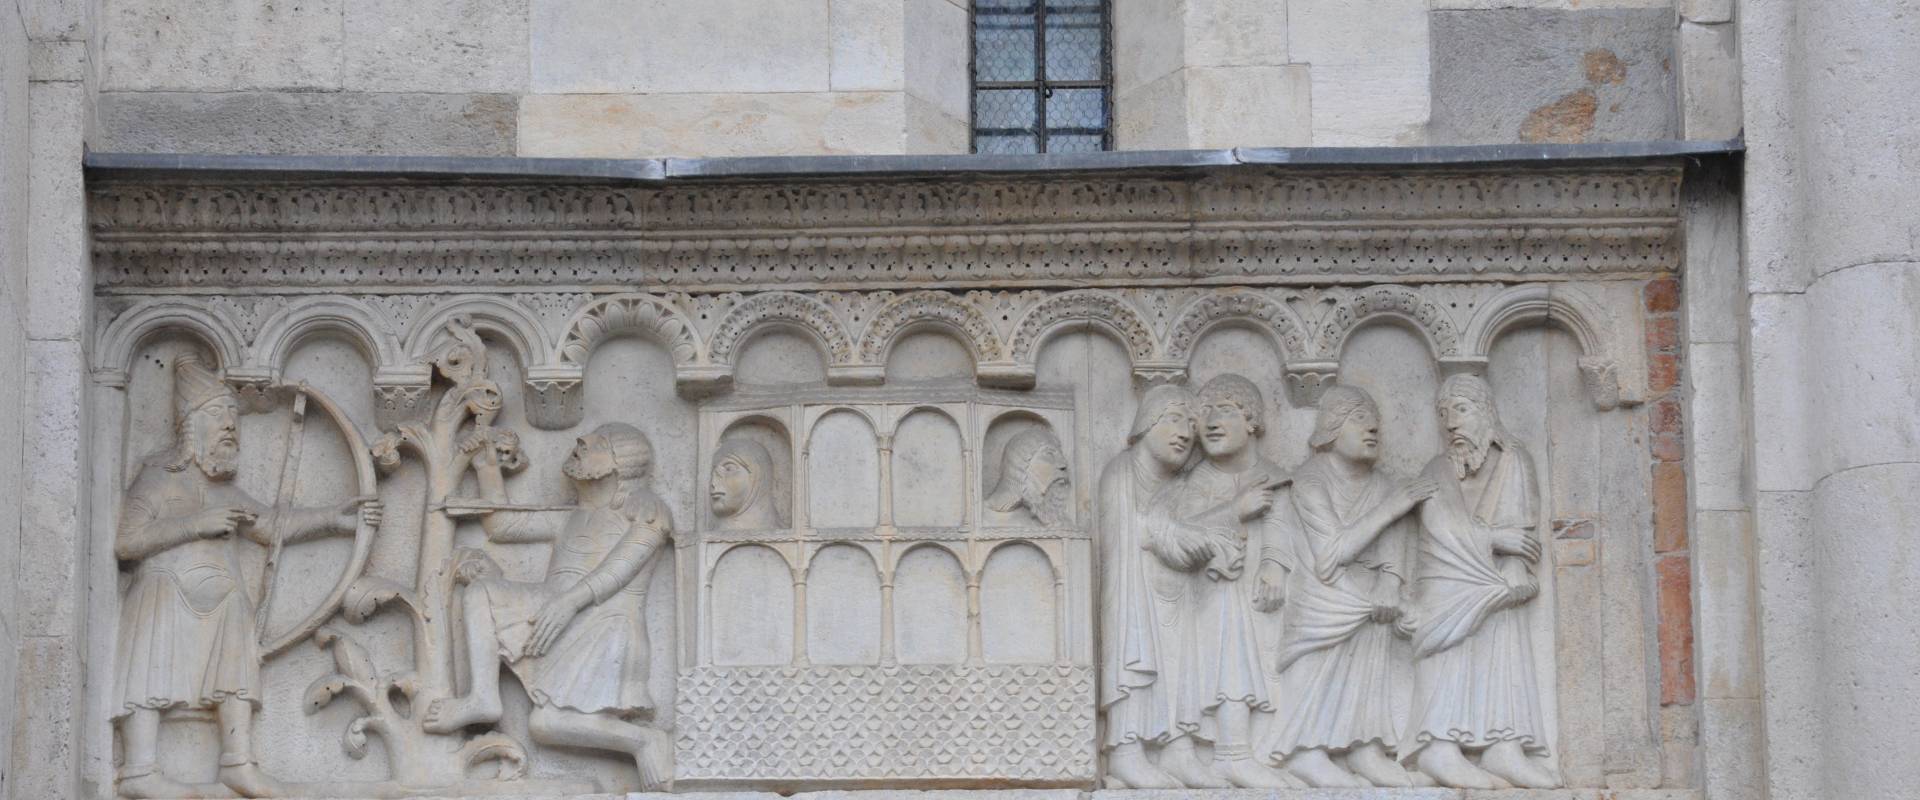 Duomo modena estero particolare facciata balcone foto di Manesti